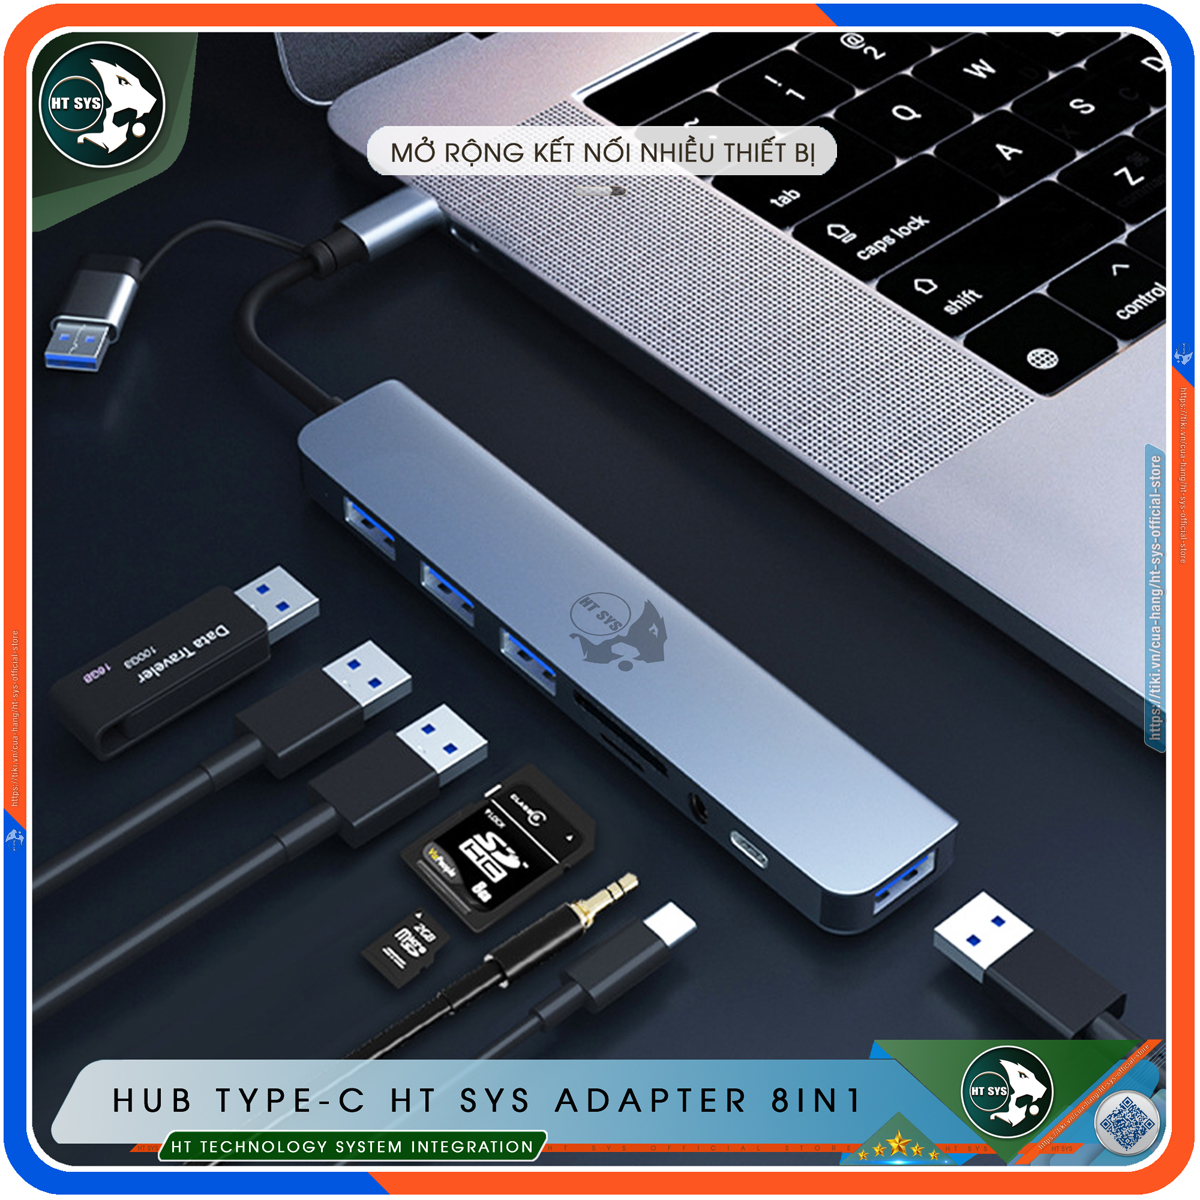 Hub USB 3.0 Và Hub Type C HT SYS Adapter 8in1 - Cổng Chia USB Mở Rộng Kết Nối Tốc Độ Cao Dành Cho Macbook, Laptop, PC - Hub Chuyển Đổi USB Type-C Hỗ Trợ Sạc Pin, Kết Nối Đa Năng ổ Cứng, Bàn Phím, Chuột, Máy In, Ổ Chia USB - Hàng Chính Hãng